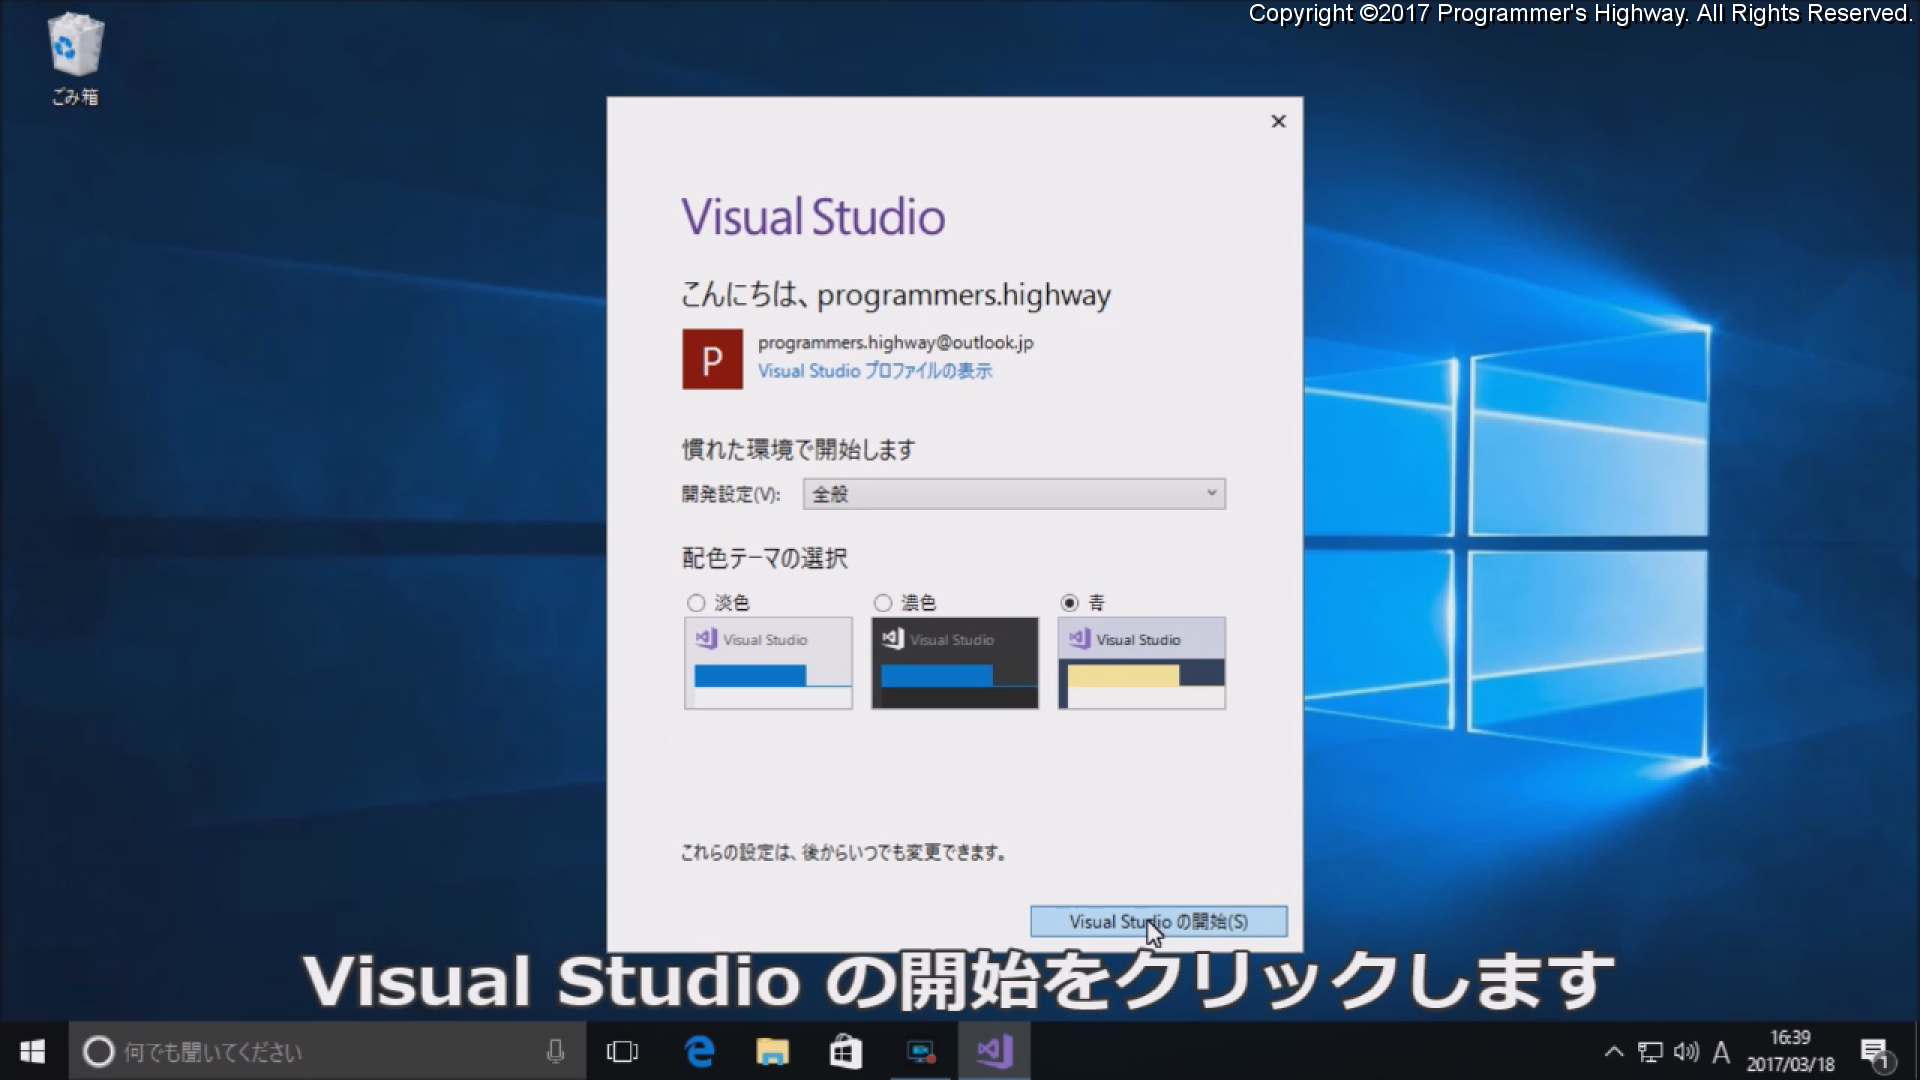 Visual Studio の開始をクリックします